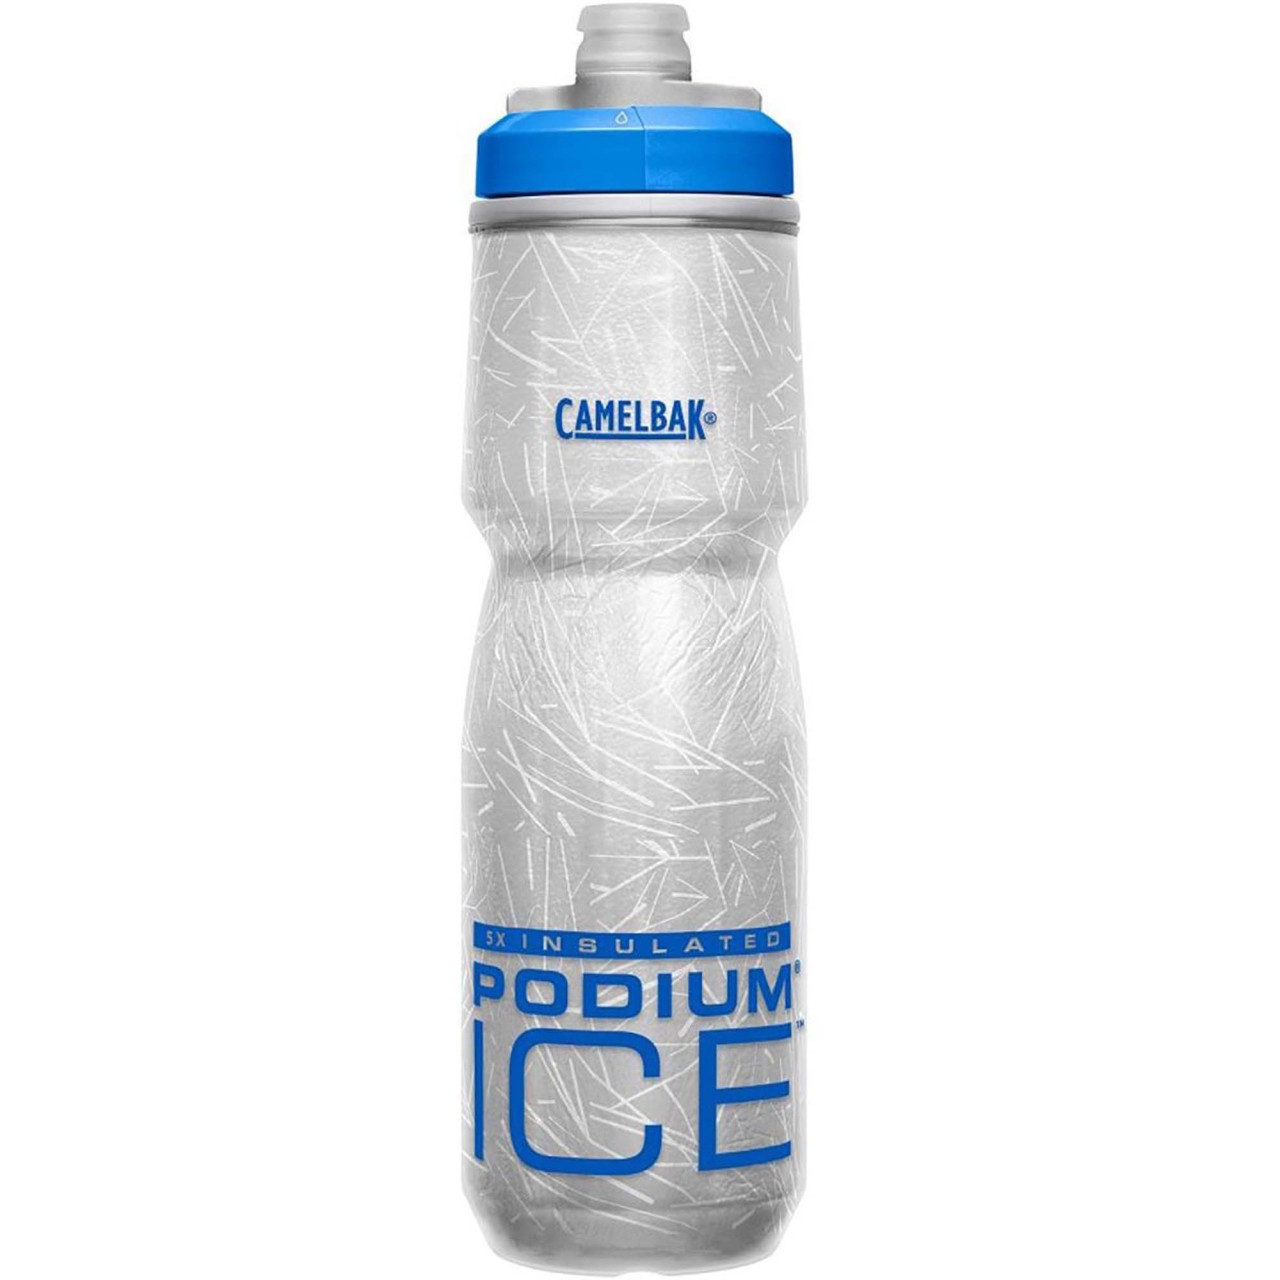 Camelbak Botella de hielo Podium Oxford Plata - 620 ml